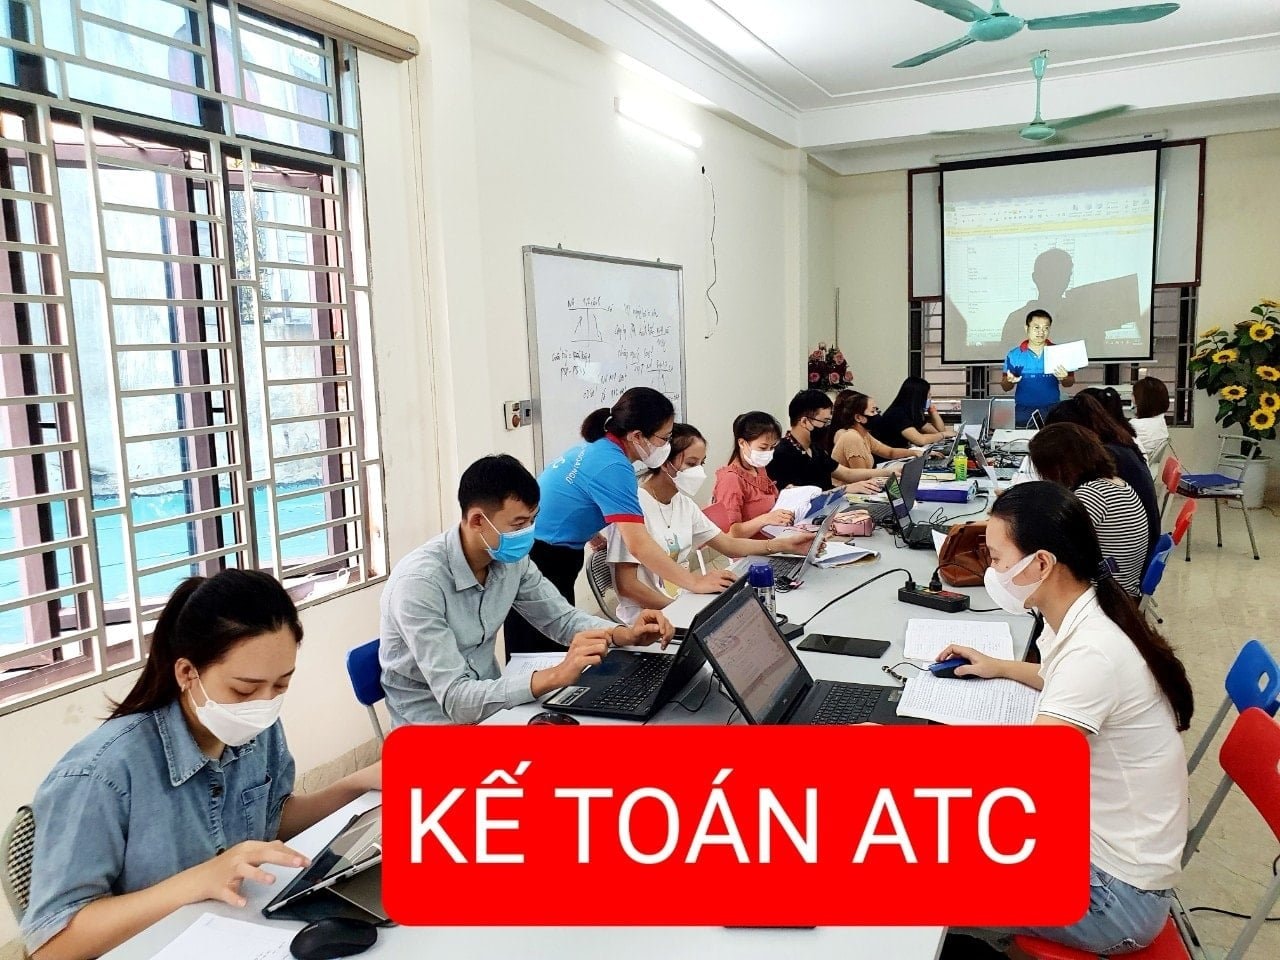 Trung tâm đào tạo kế toán ở Thanh Hóa 